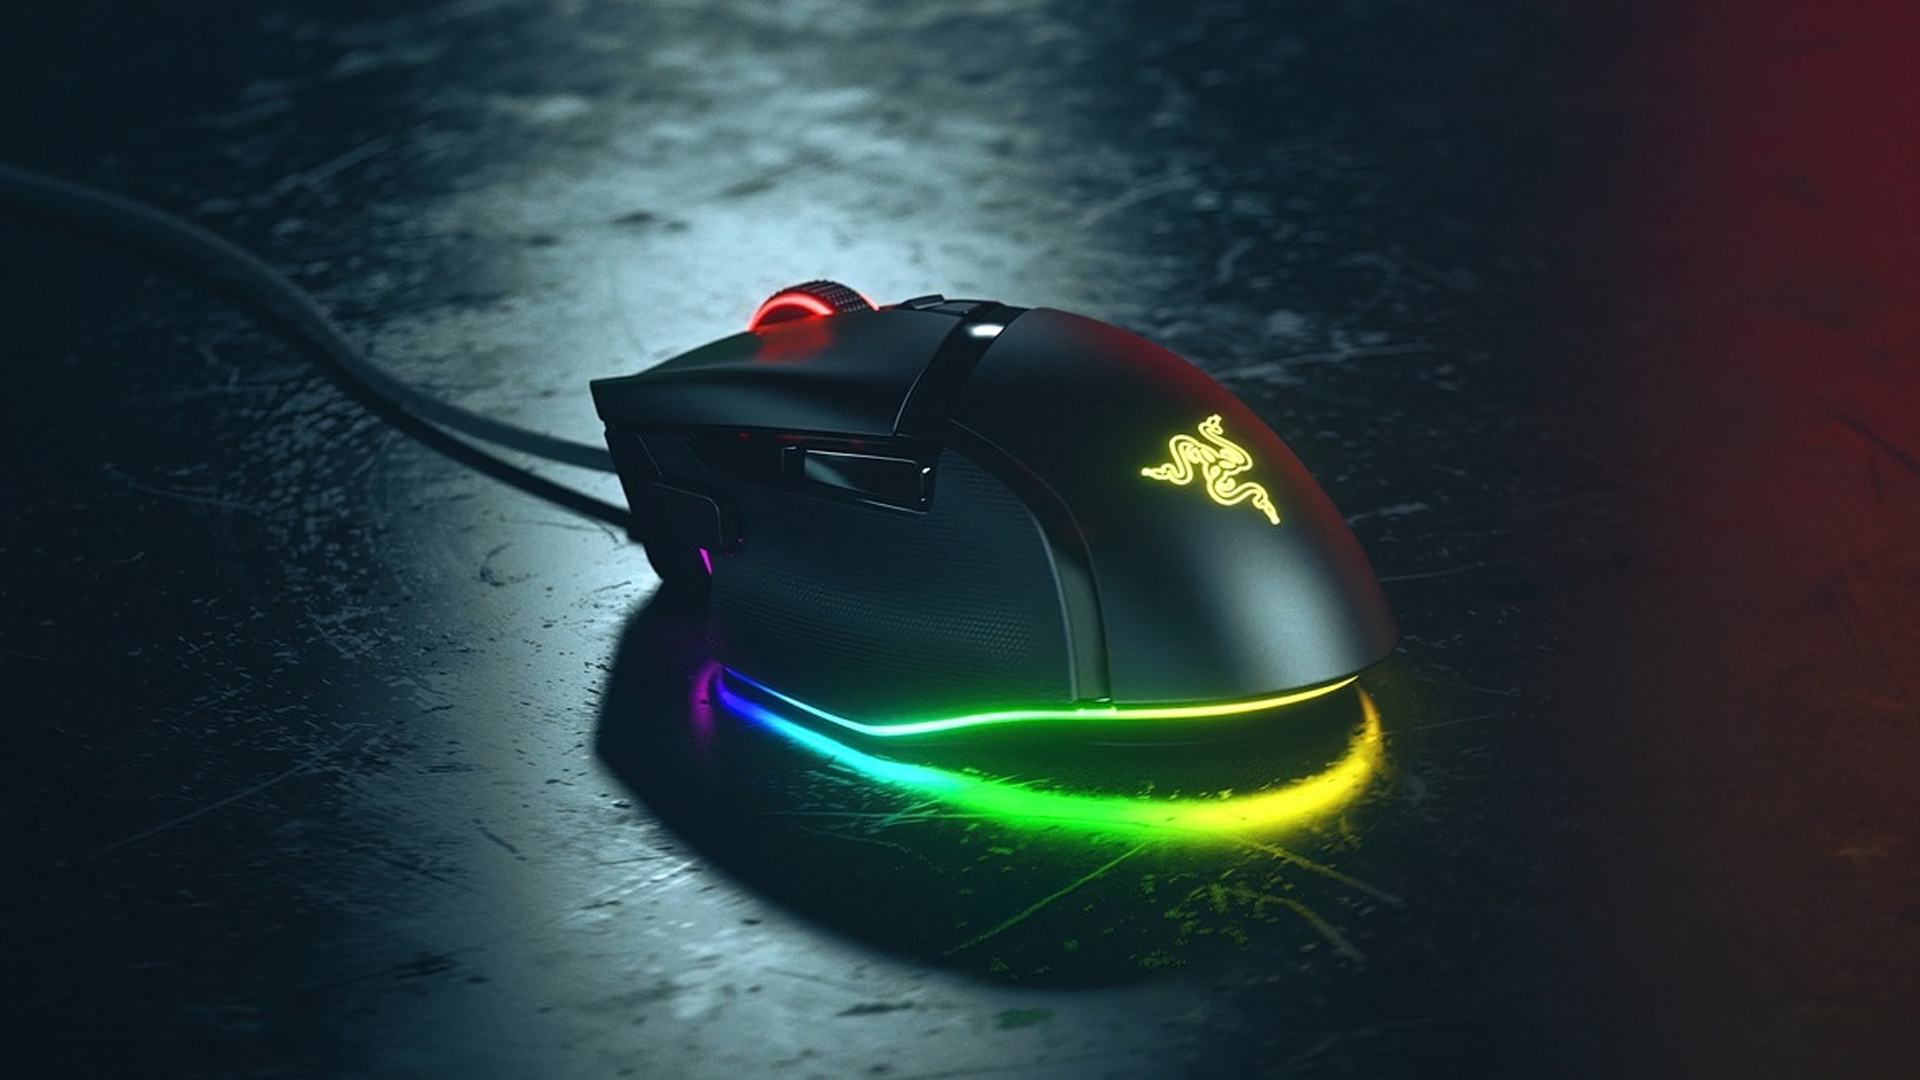 Razer's Basilisk V3 mouse fully illuminated.